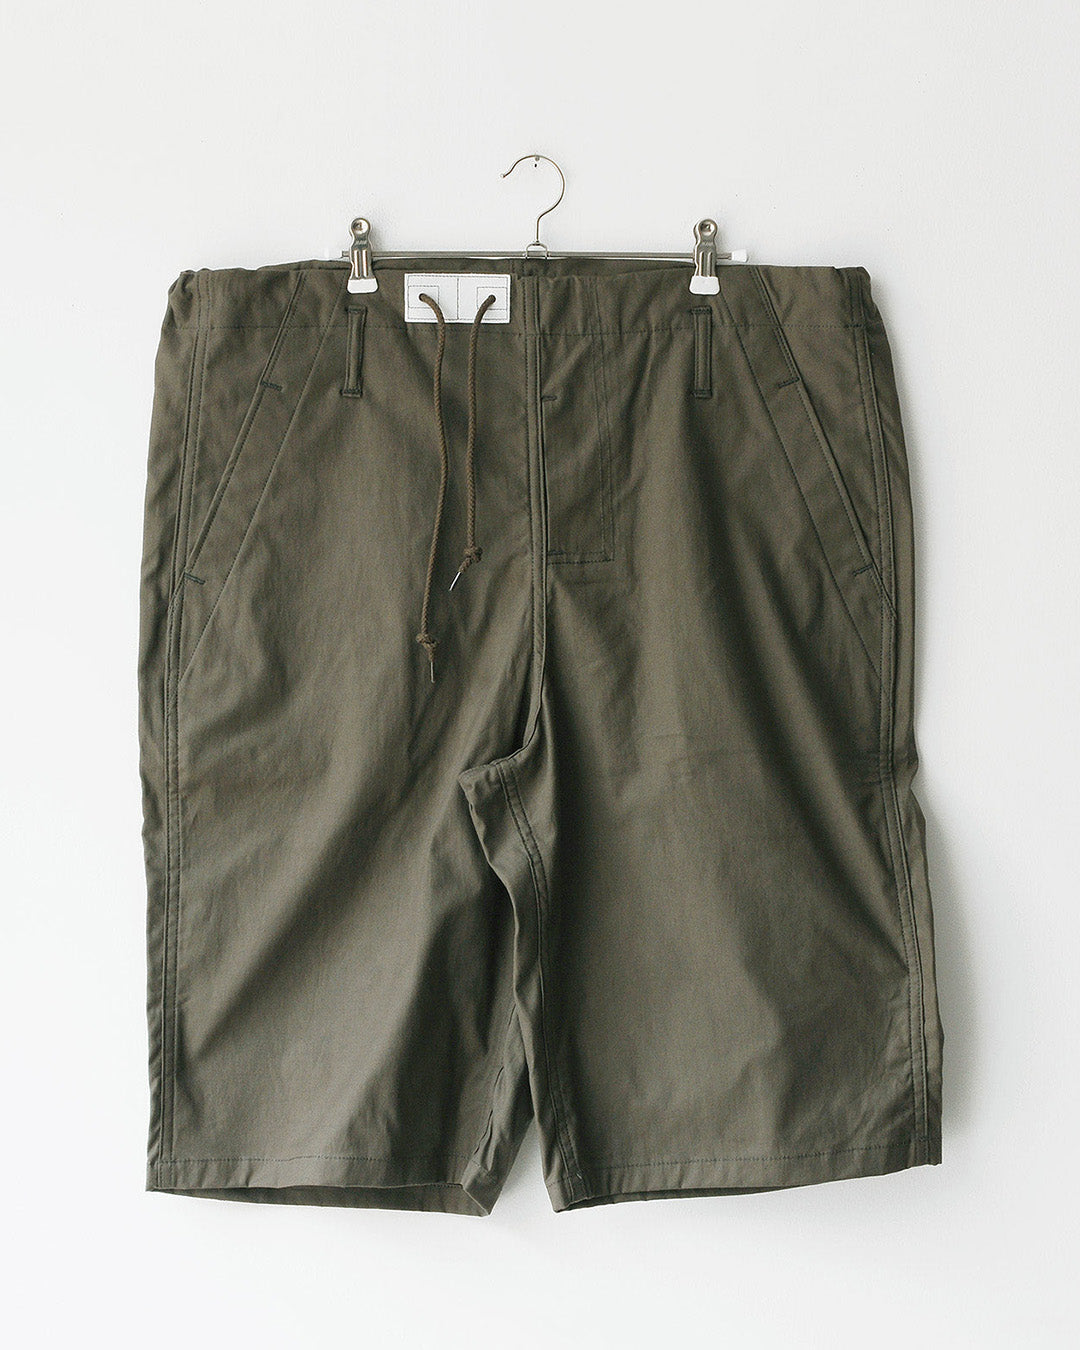 TUKI big shorts / O.D. / double gabardine【正規通販店】 – bollard